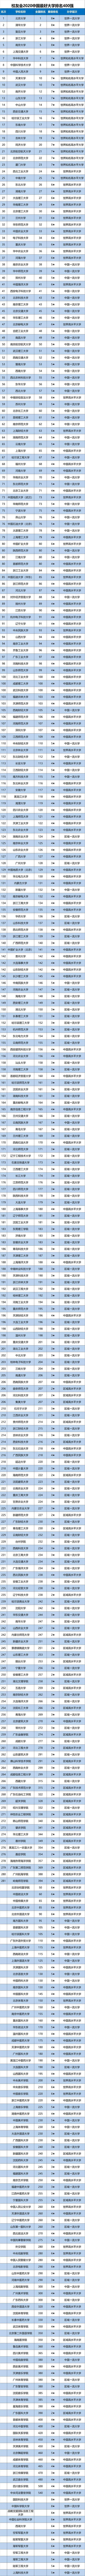 全国大学排名50强20_最新发布2020年中国最好大学排名,2020年中国最好大学